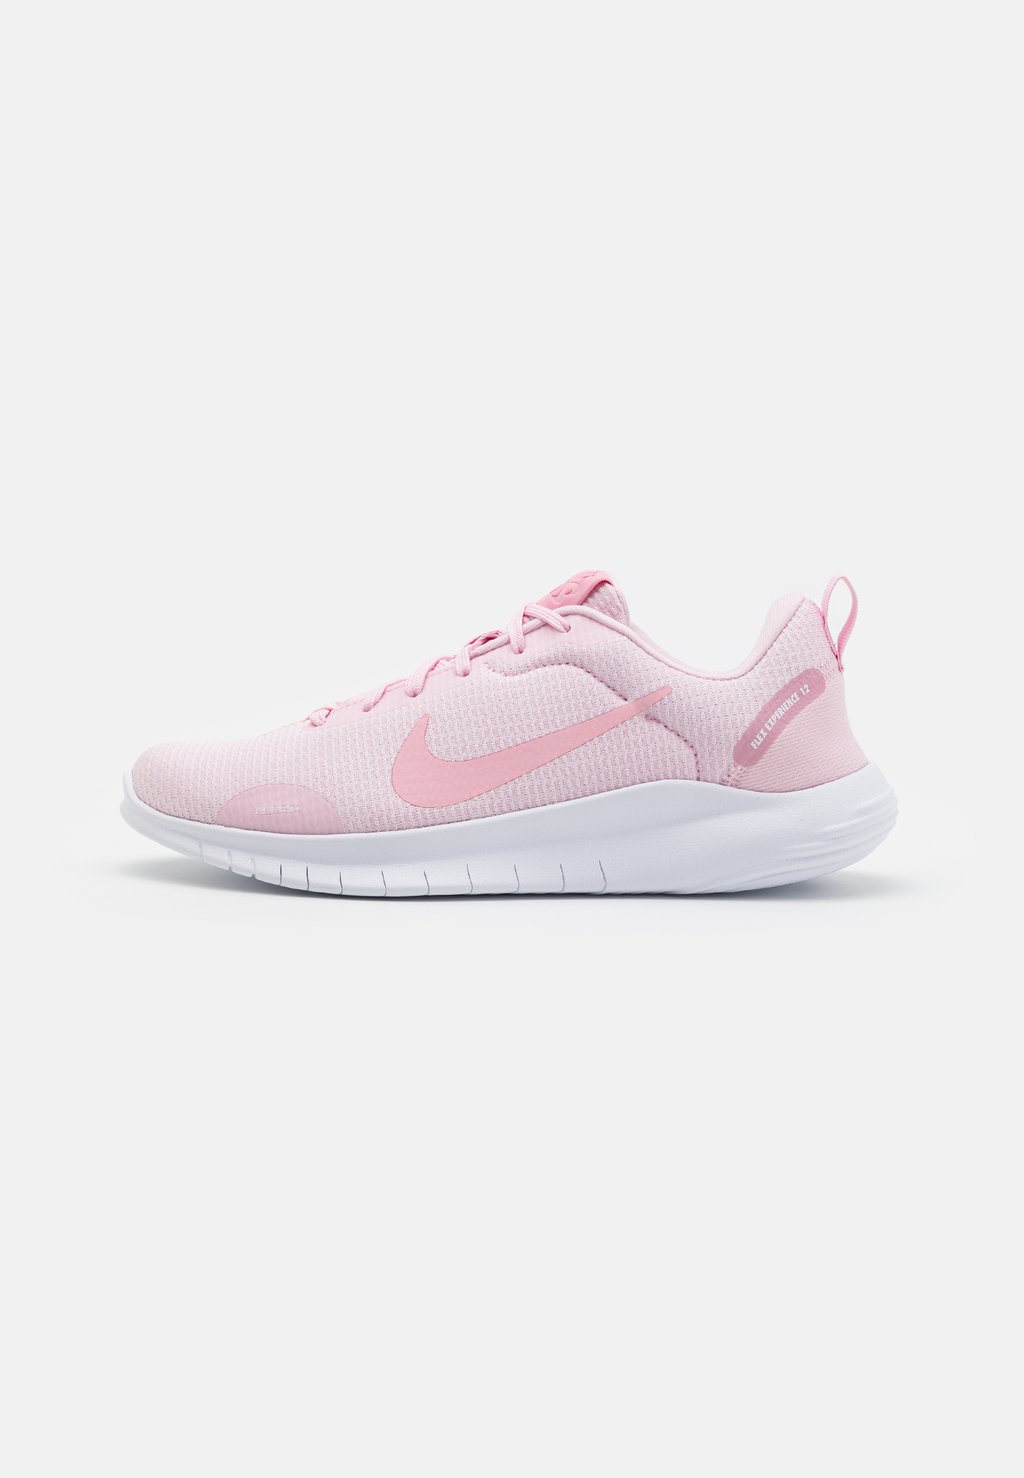 эпилятор luazon lep 01 white pink 1221916 Нейтральные кроссовки FLEX EXPERIENCE RN 12 Nike, цвет pink foam/white/pearl pink/med soft pink